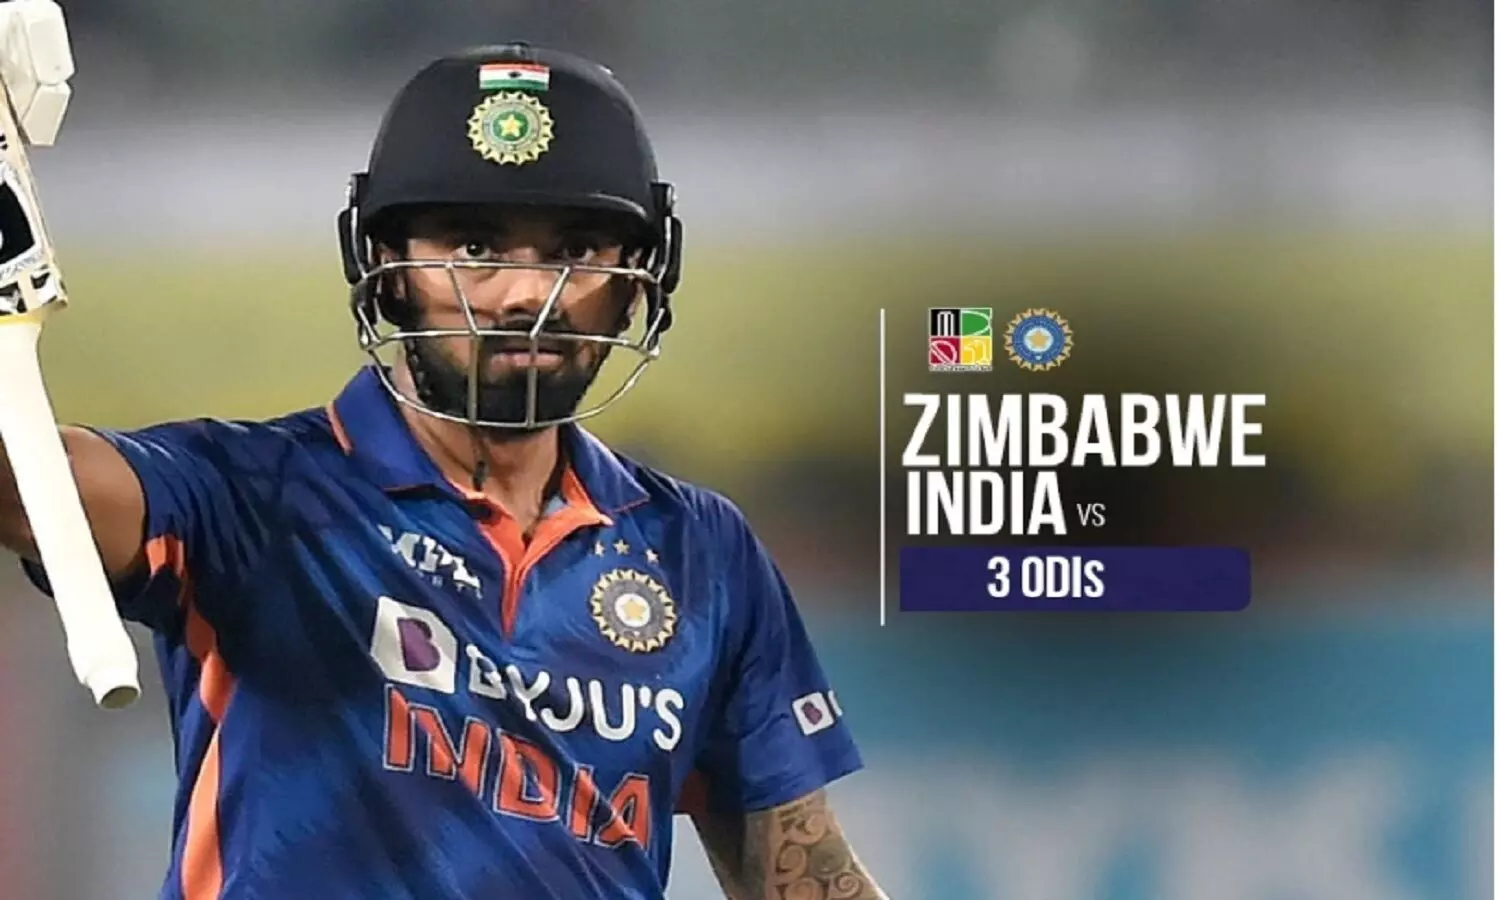 India vs Zimbabwe ODI Full Schedule: इंडिया Vs ज़िम्बाब्वे ODI सीरीज का शेडूयल, टीम और ग्राउंड्स के बारे में सब जानें